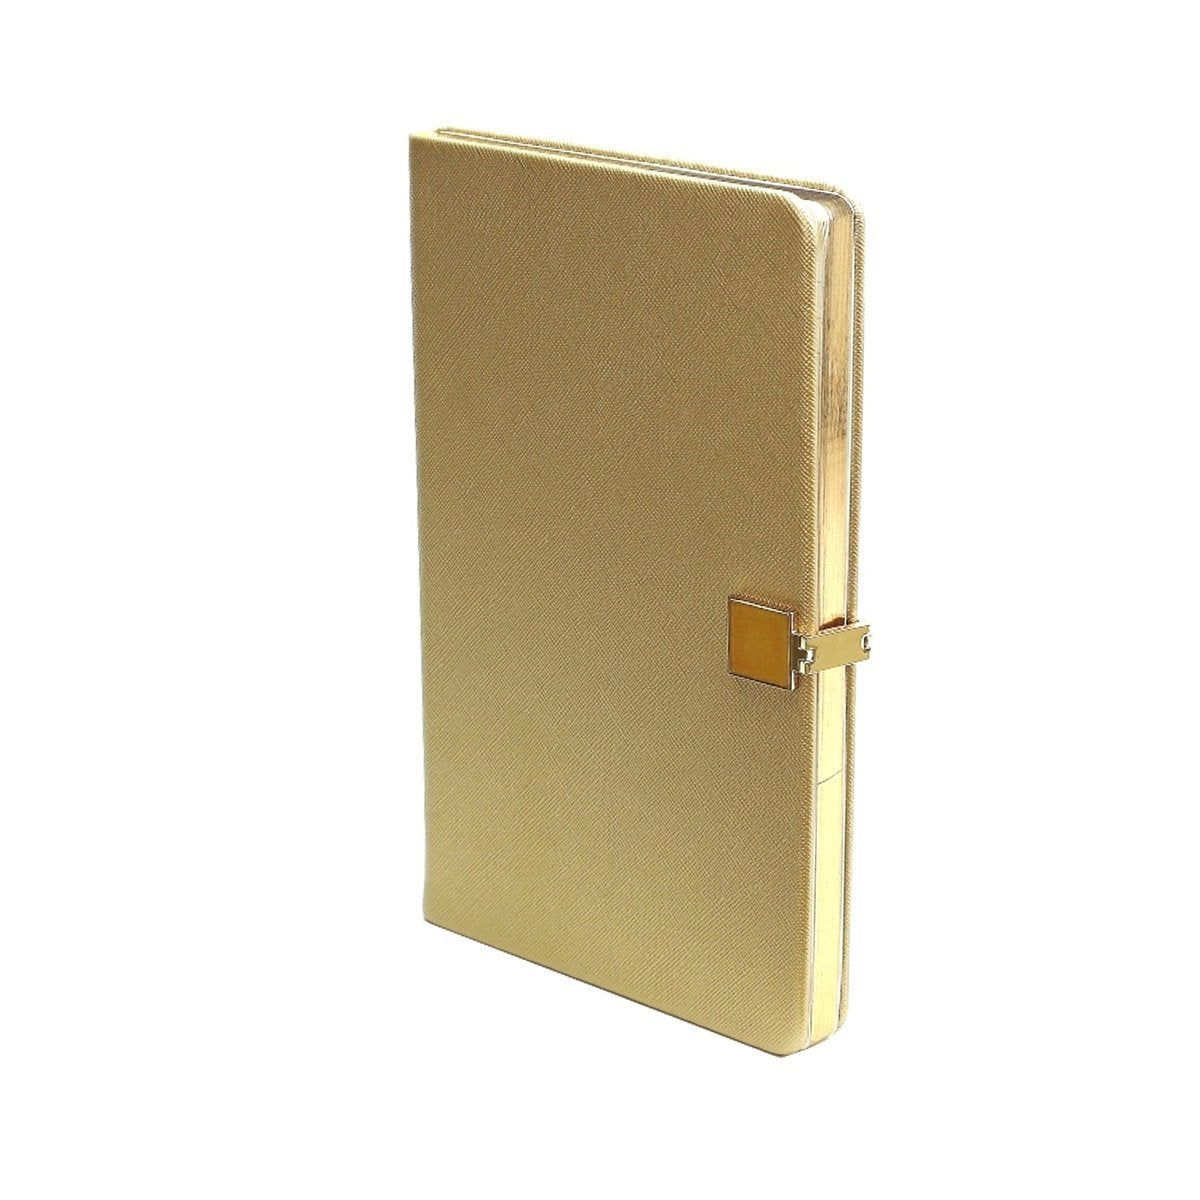 Gold & Gold A5 Notebook - Addison Ross Ltd UK